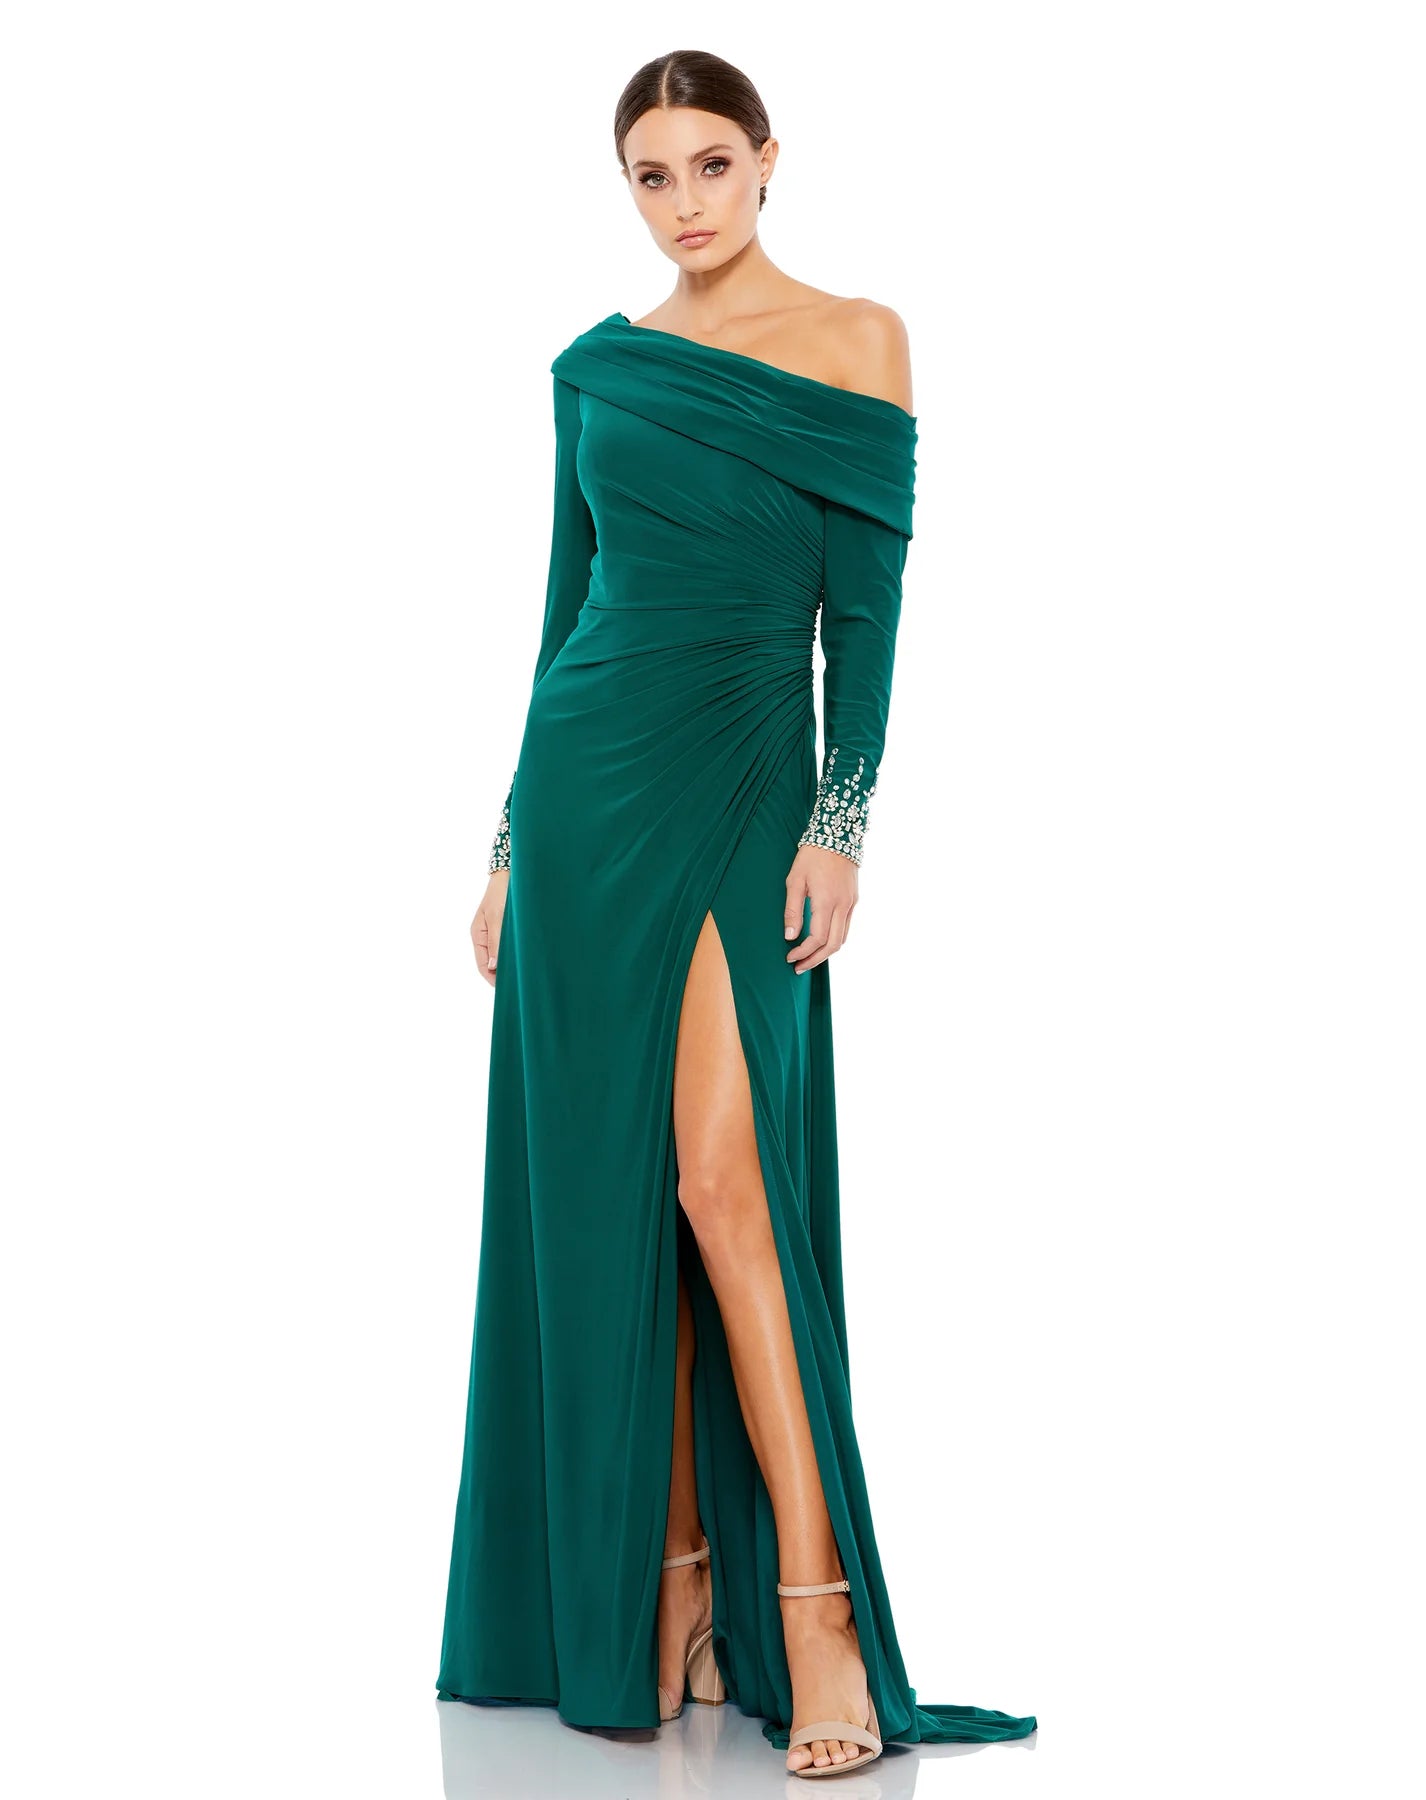 Emerald Green One Shoulder Column Dress (3106971)